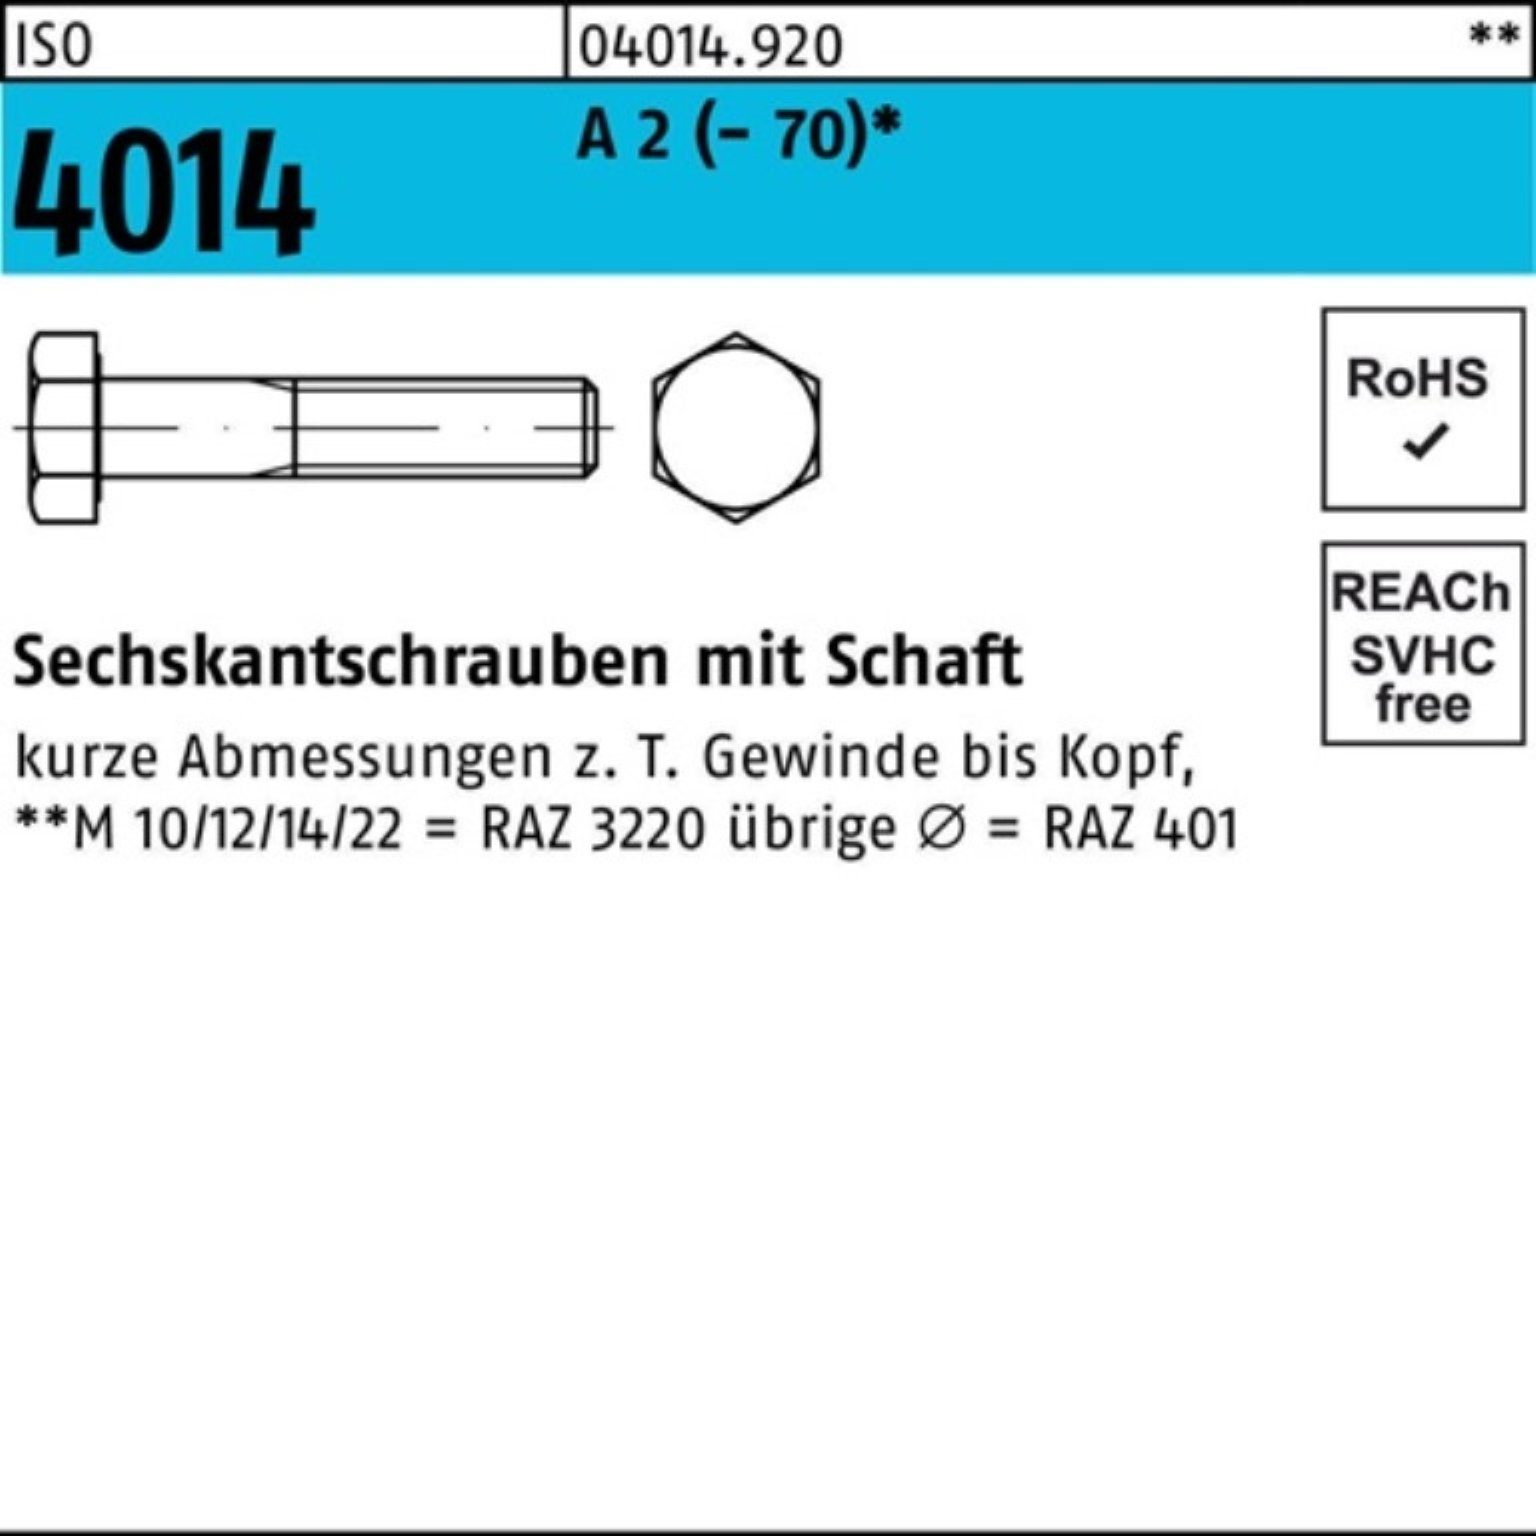 Bufab Sechskantschraube 100er Pack Sechskantschraube ISO 4014 Schaft M14x 180 A 2 (70) 1 St